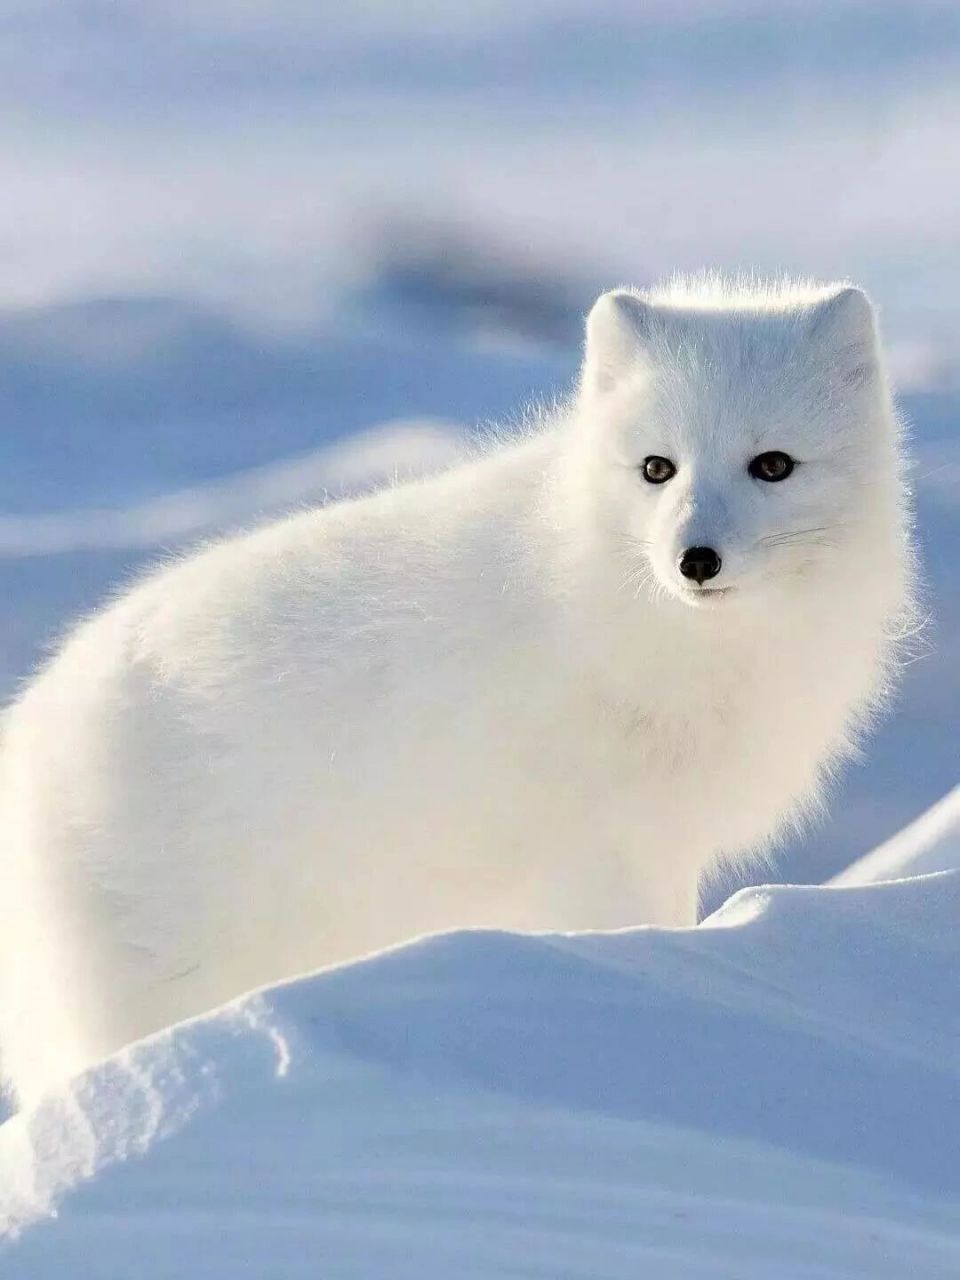 雪狐丨犬科北极狐属动物02 989898 列入《世界自然保护联盟